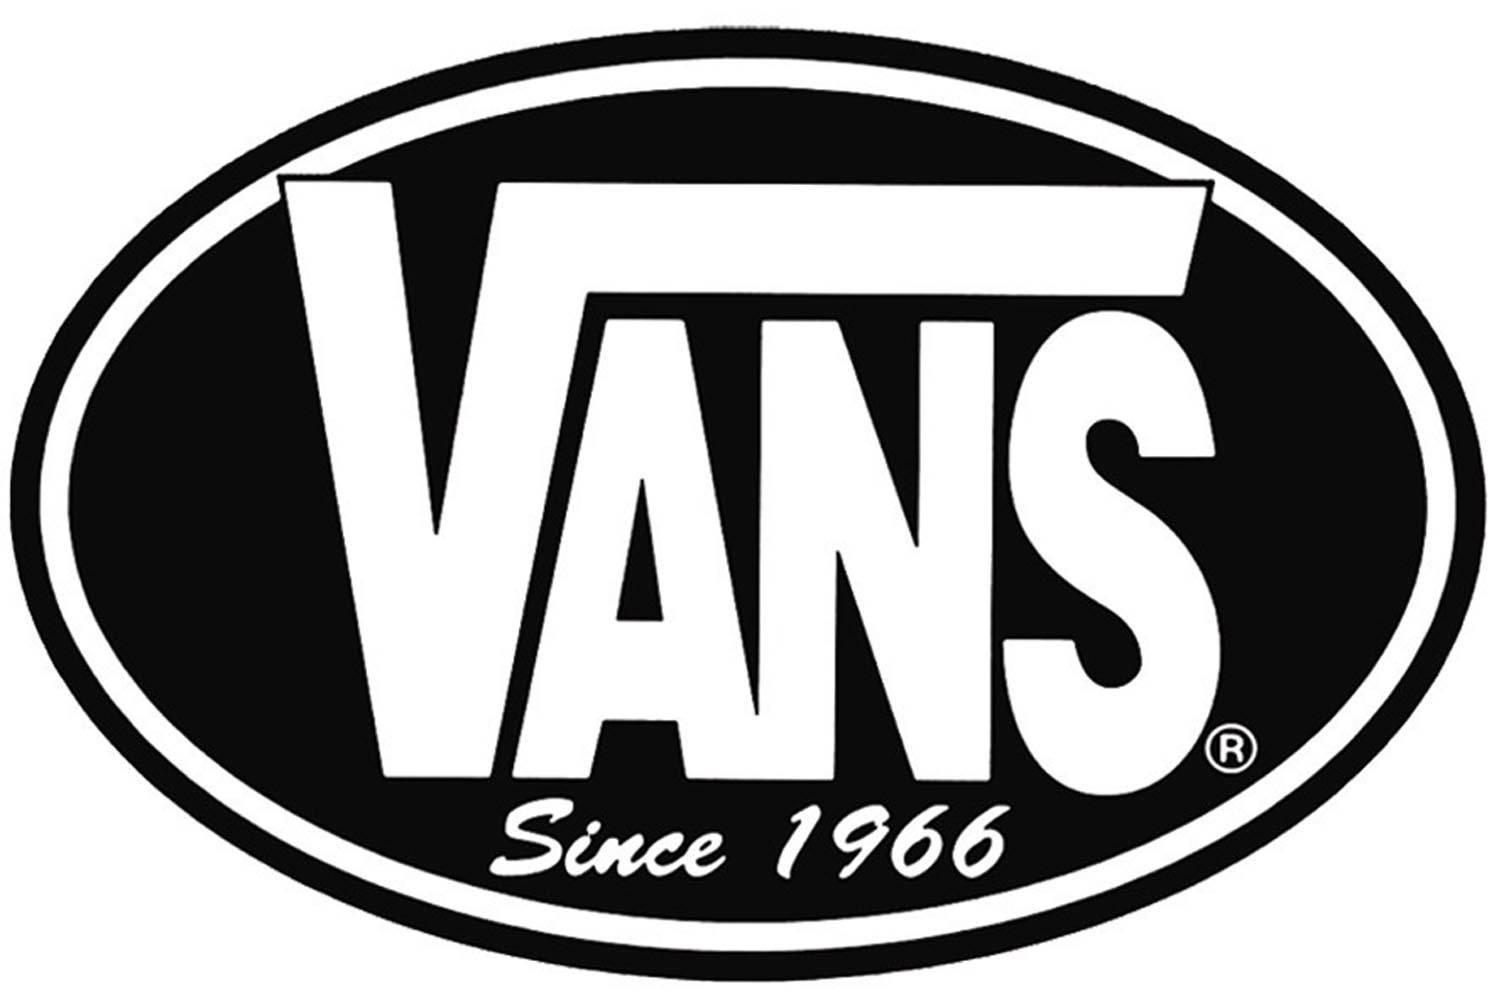 vans_logo_large